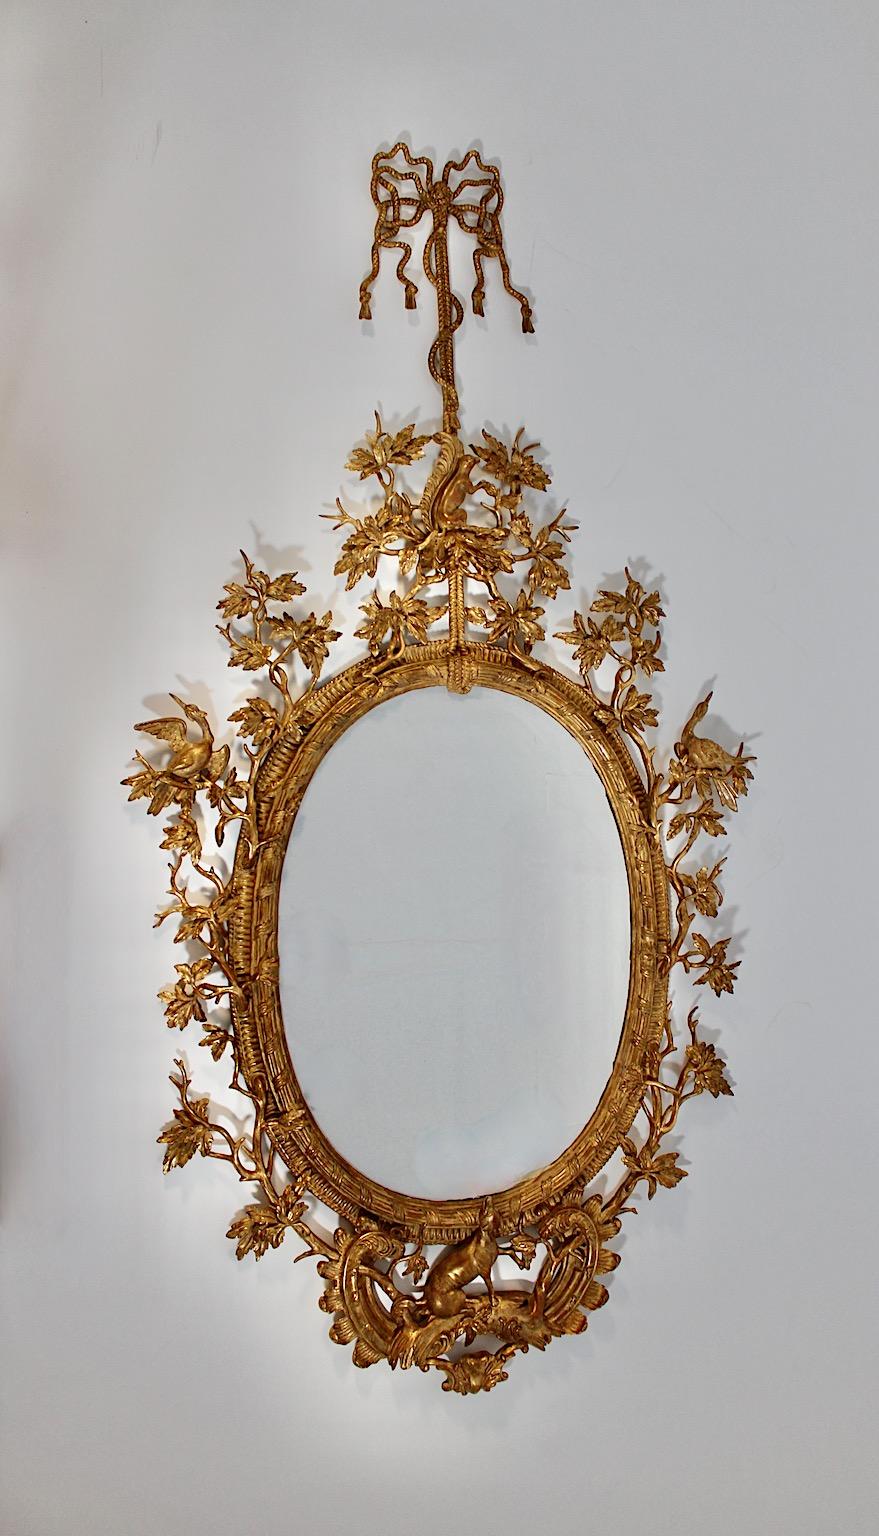 Miroir mural ou miroir de sol ancien en bois de tilleul sculpté à la main et doré, vers 1830.
Magnifique miroir mural, miroir de sol ou miroir en pied en bois de tilleul sculpté à la main et doré, vers 1830, dans le style et très similaire aux